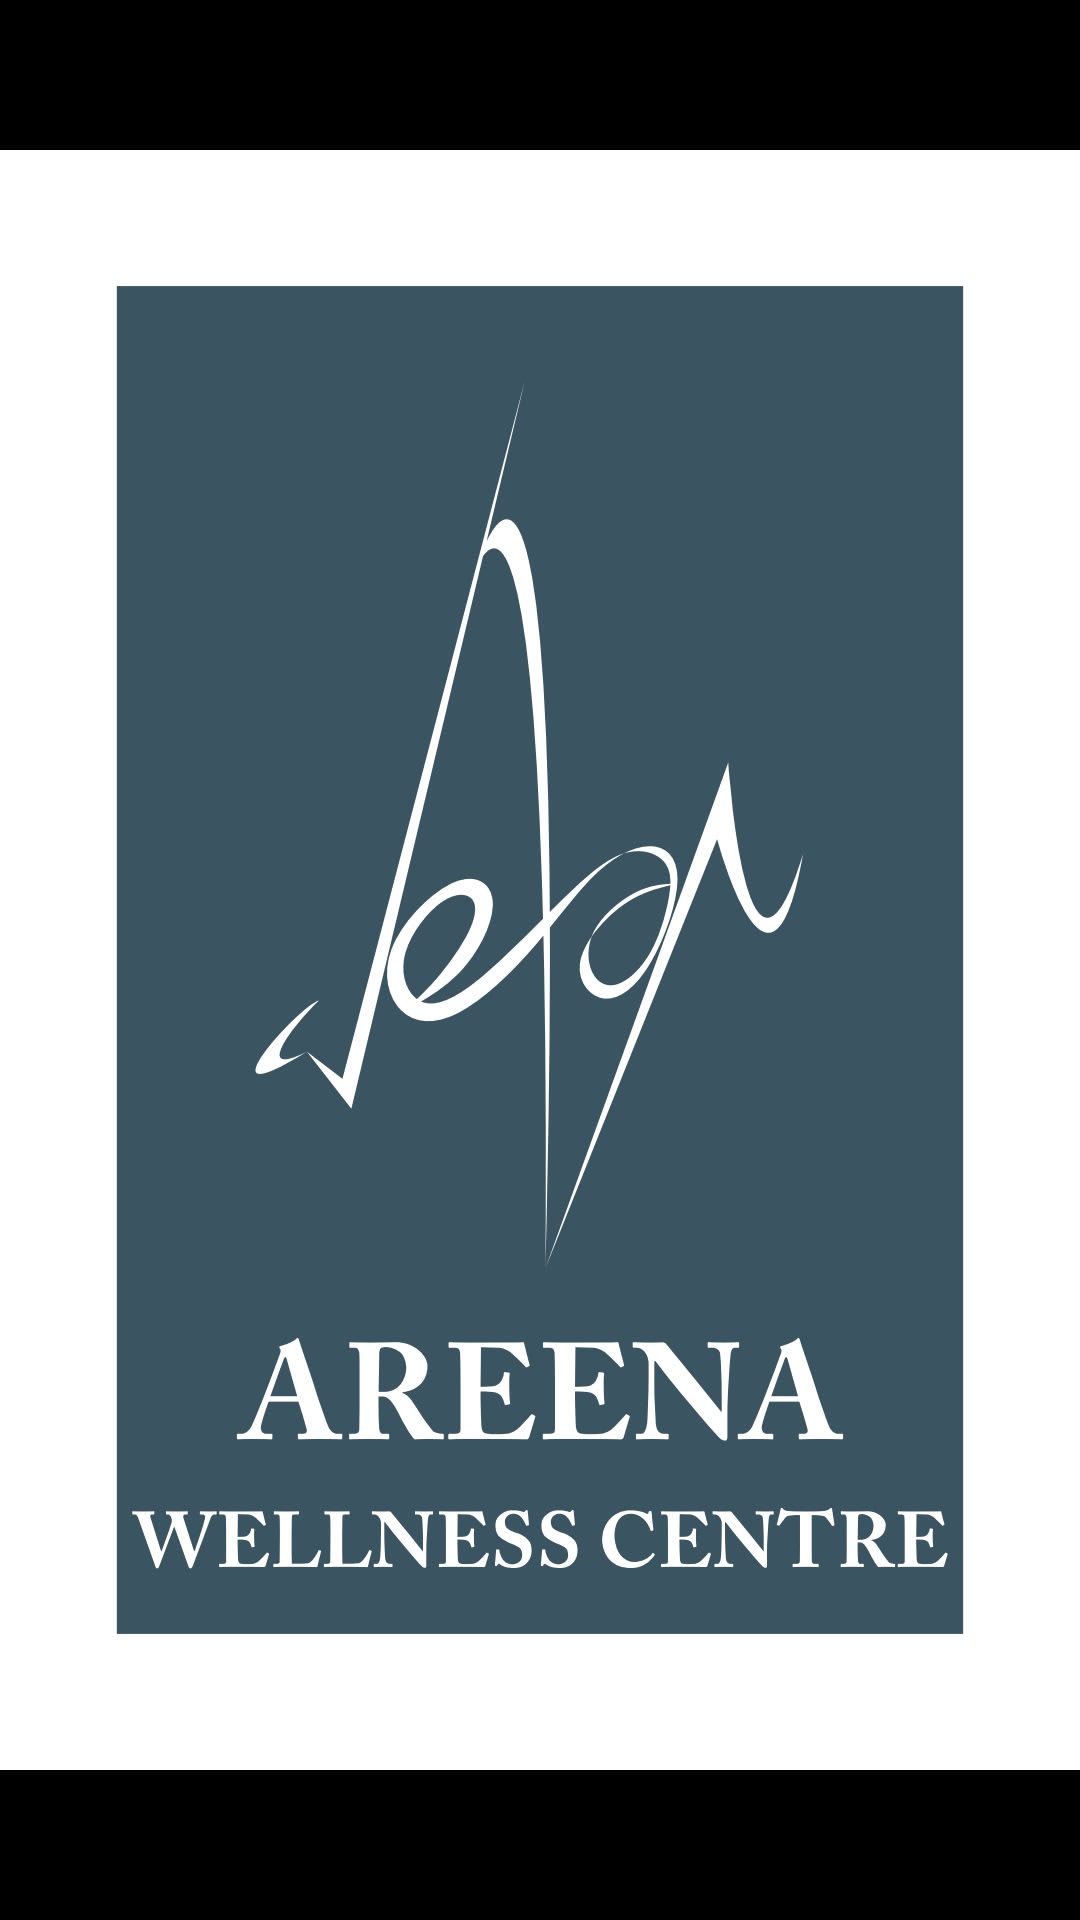 Areena Wellness Centre